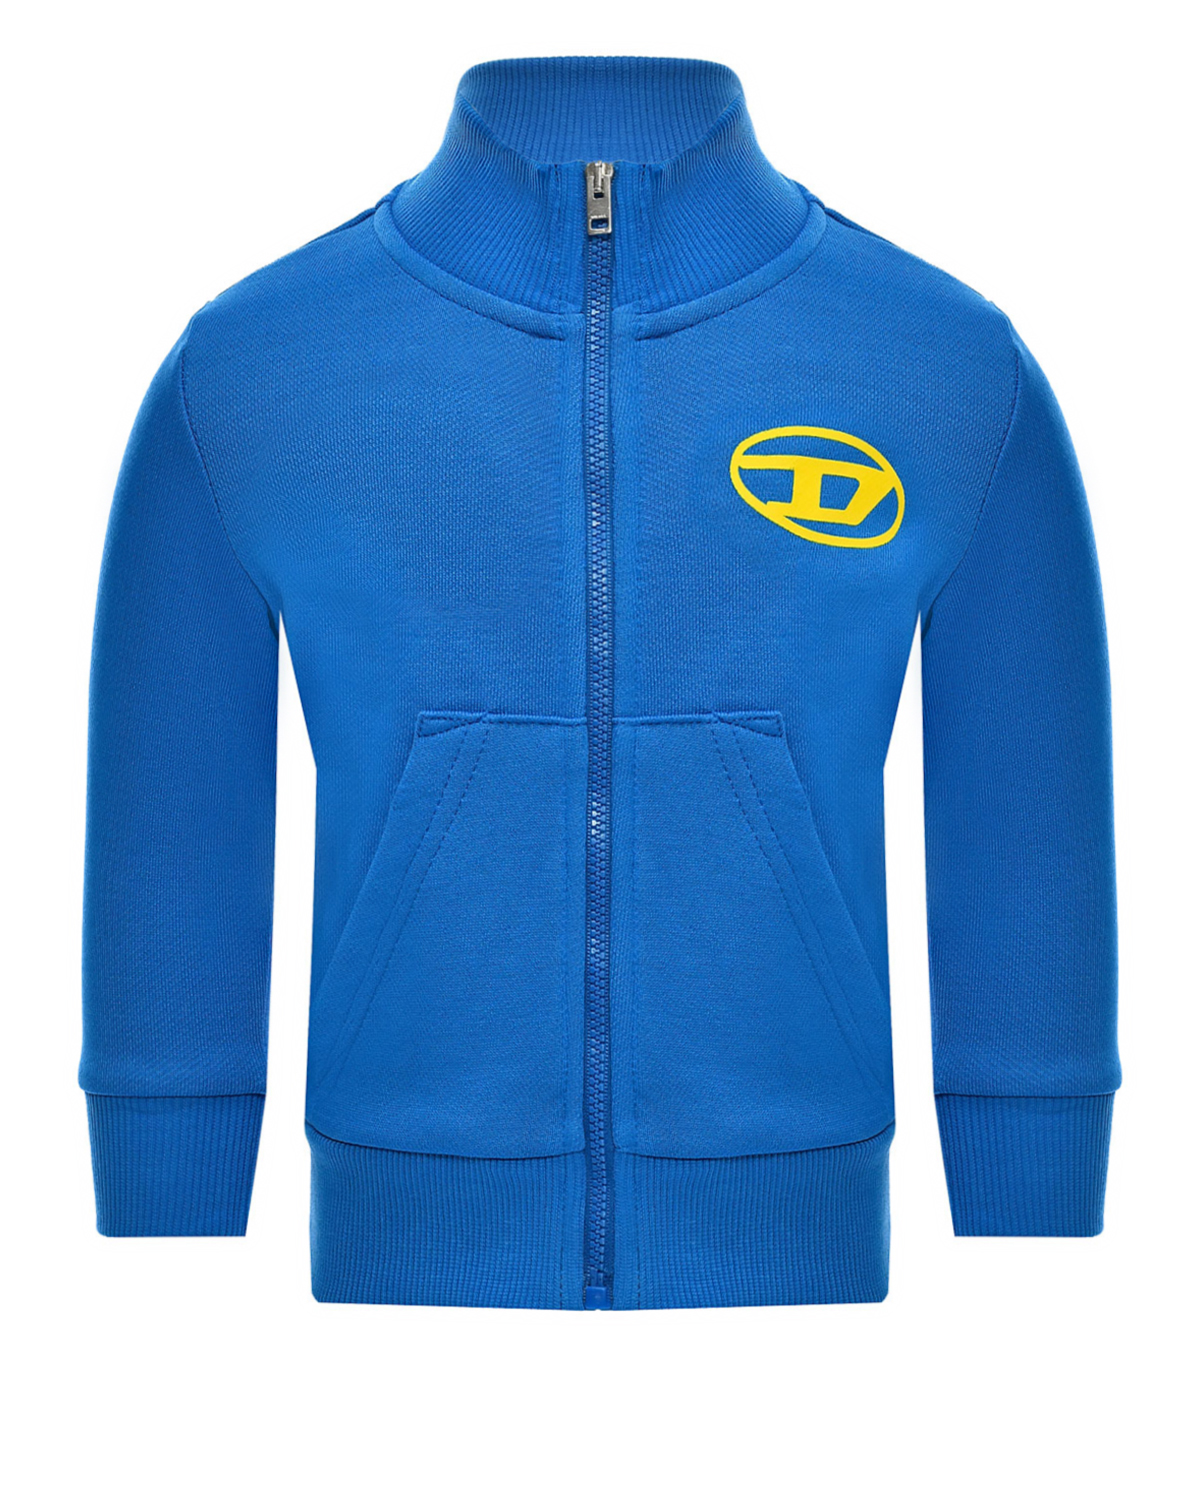 Спортивная куртка с застежкой на молнию, синяя Diesel, размер 80, цвет синий - фото 1